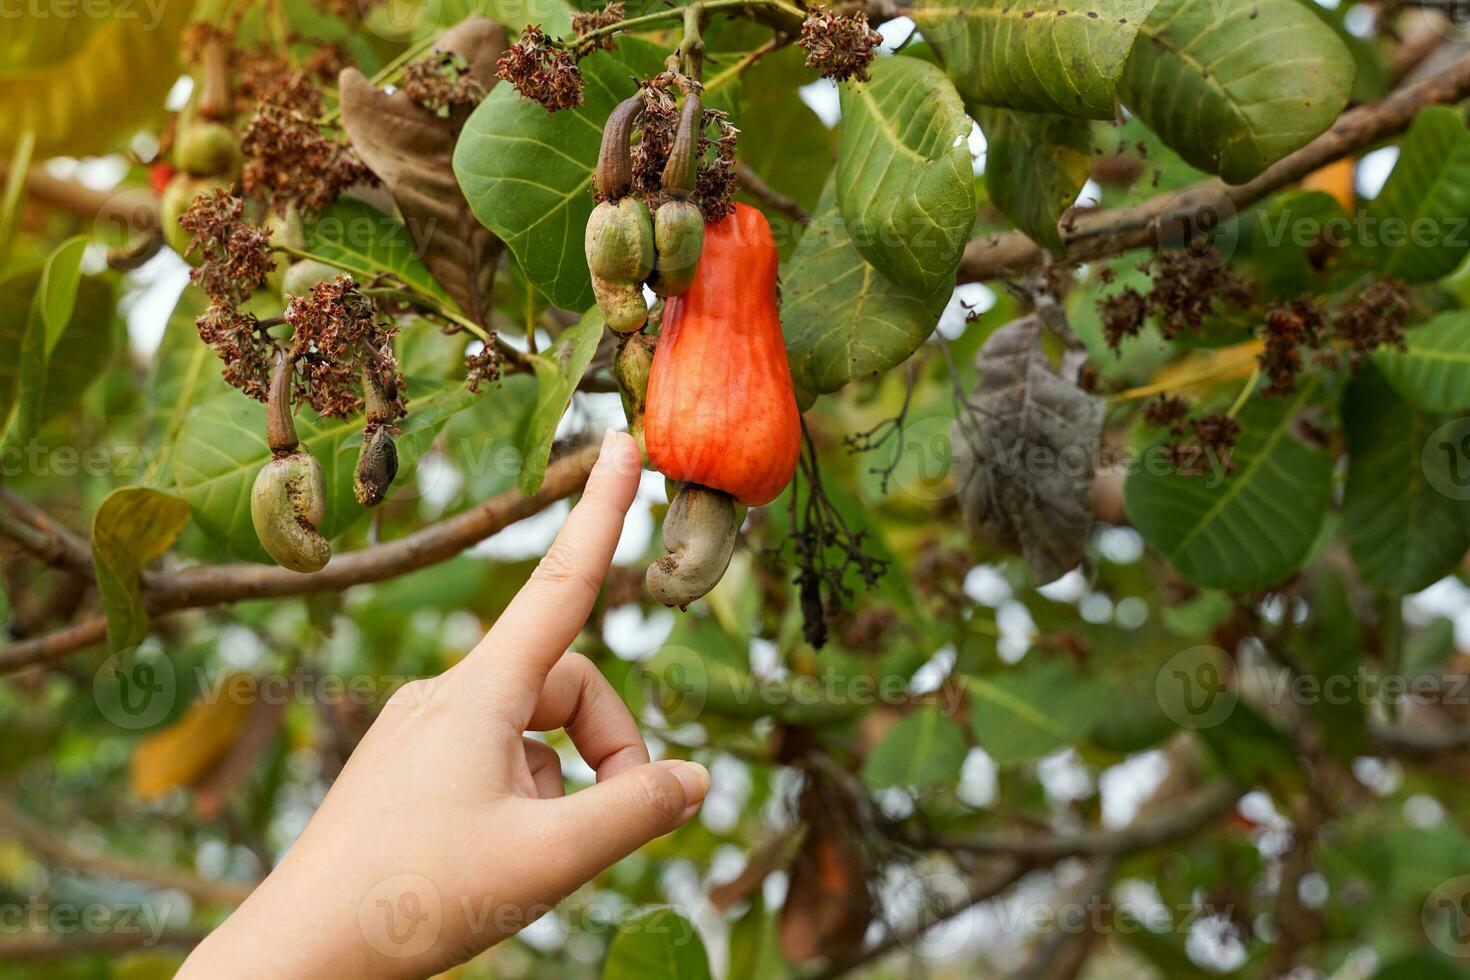 en trädgårdsmästare poäng hans hand på de kasju frukt på de träd. de frukt utseende tycka om reste sig äpple eller päron. på de slutet av de frukt där är en utsäde, formad tycka om en njure foto